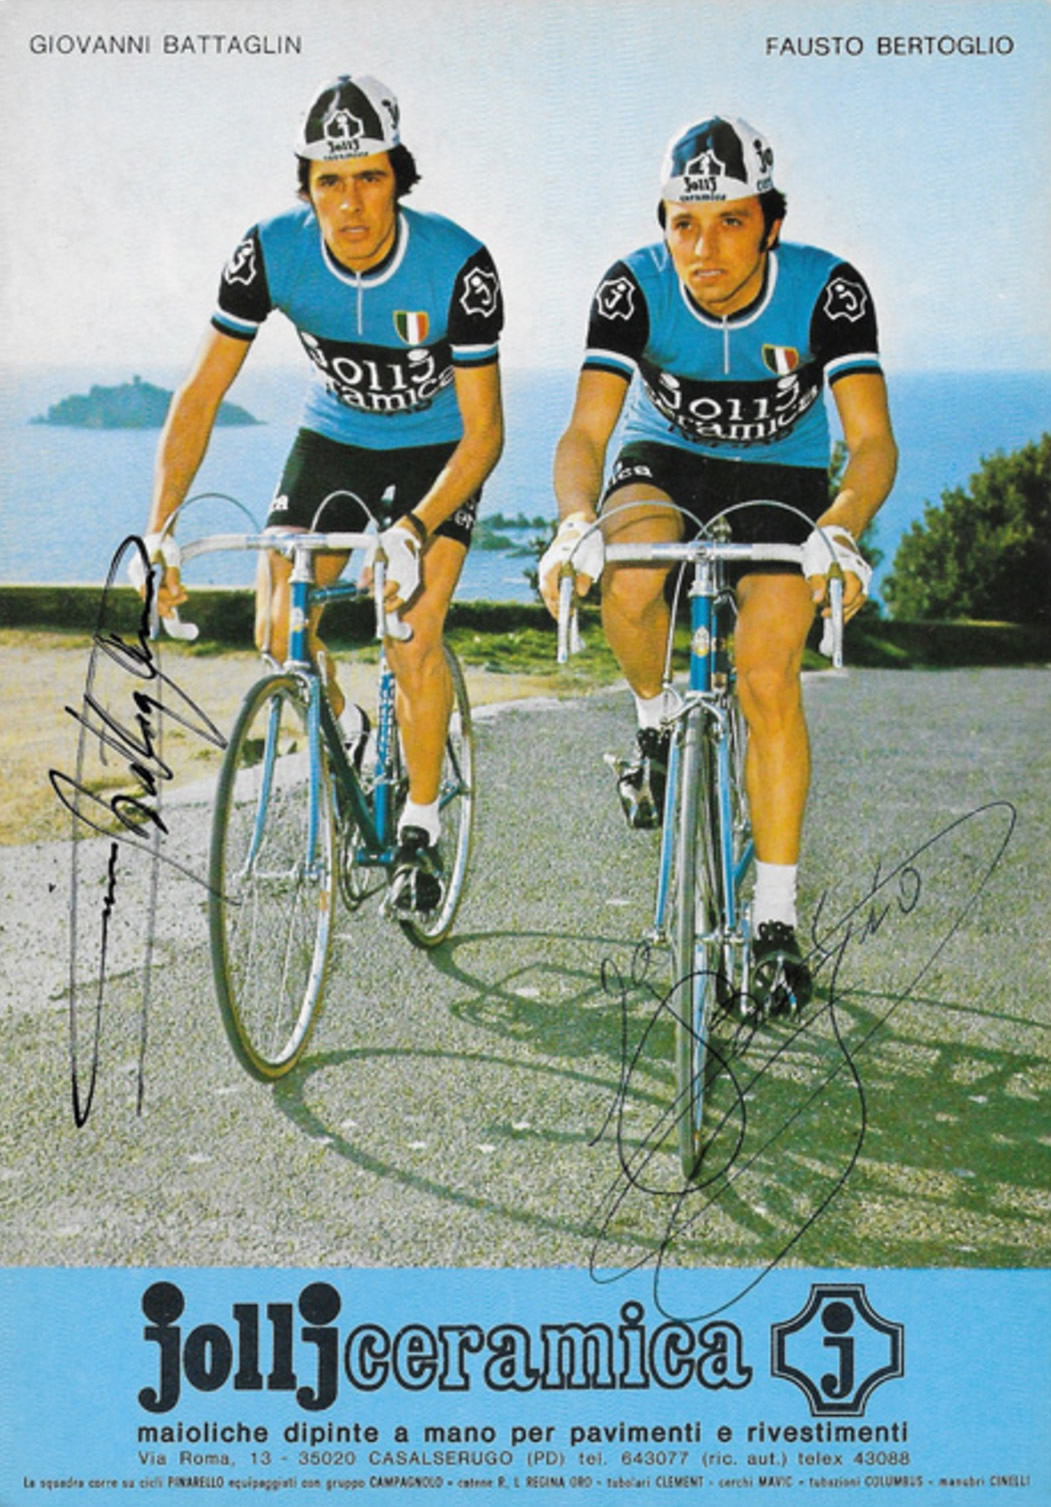 Giovanni_Battaglin_and_Fausto_Bertoglio_1976